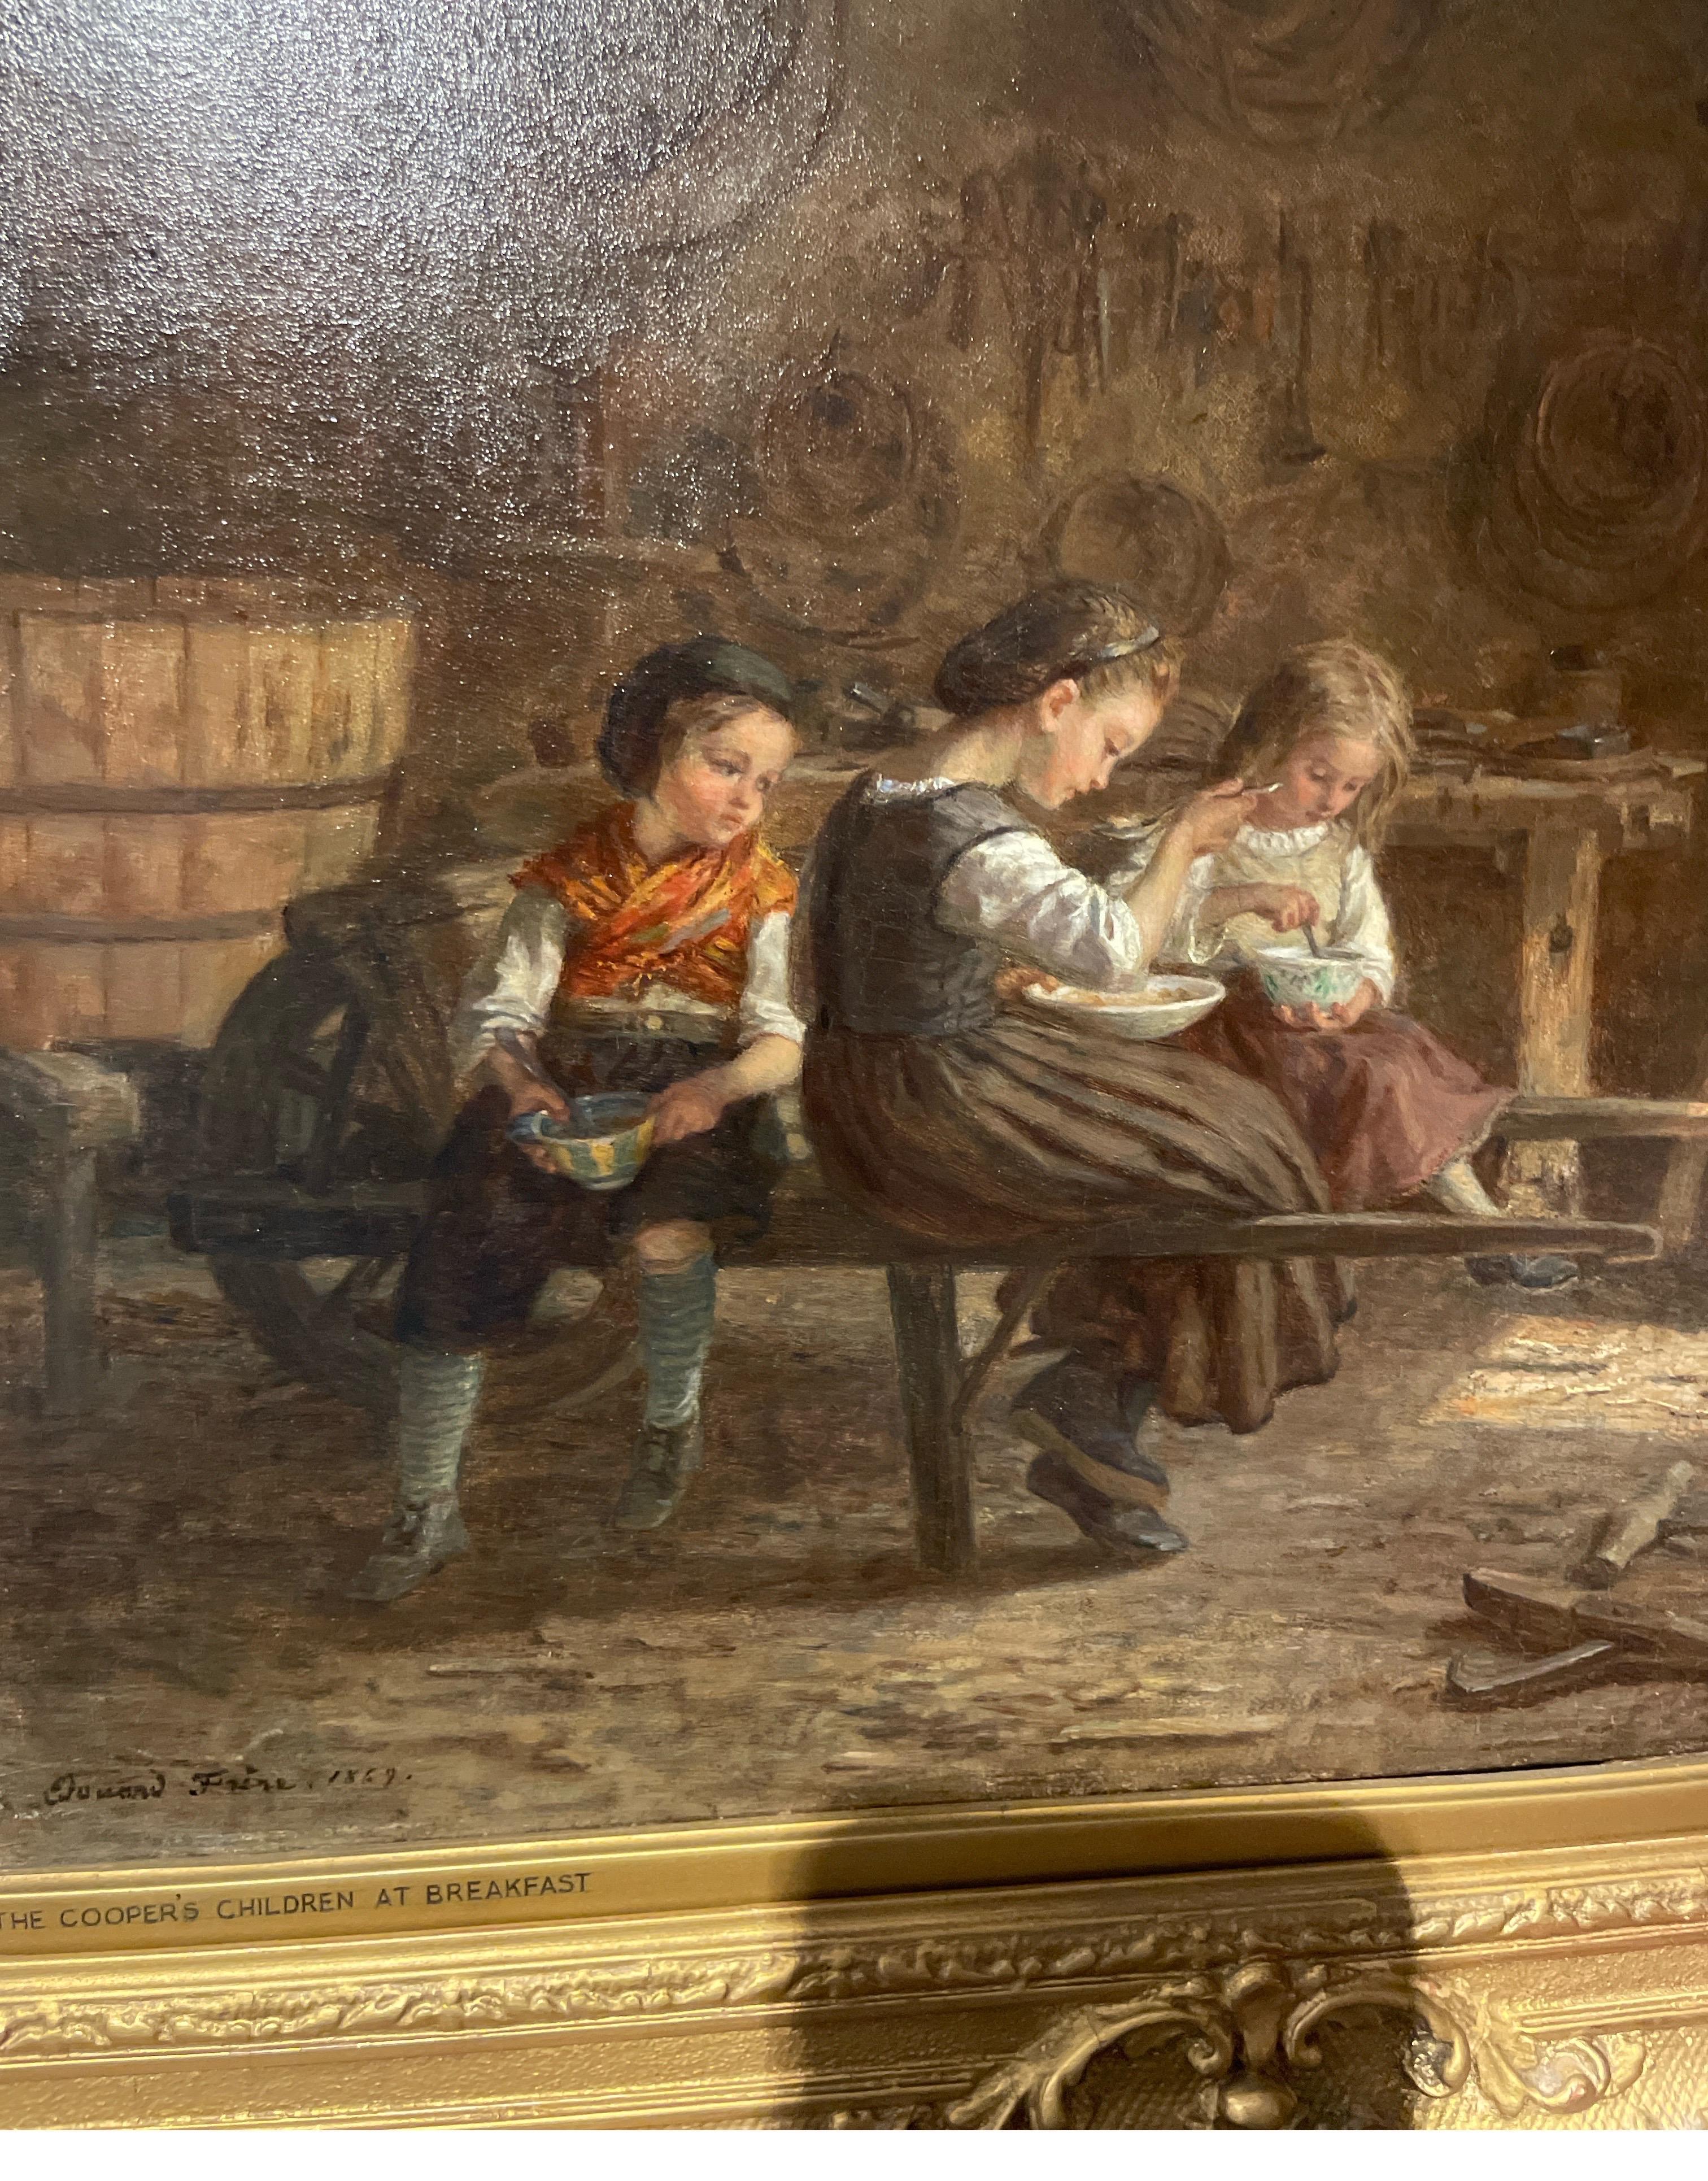 Gemalt von Eduardo Frere im Jahr 1869
Signiert unten links
Titel :Die Coopers-Kinder beim Frühstück 

Frère studierte bei Paul Delaroche, trat 1836 in die École des Beaux-Arts ein und stellte 1843 erstmals im Salon aus. Zu seinen Hauptwerken gehören